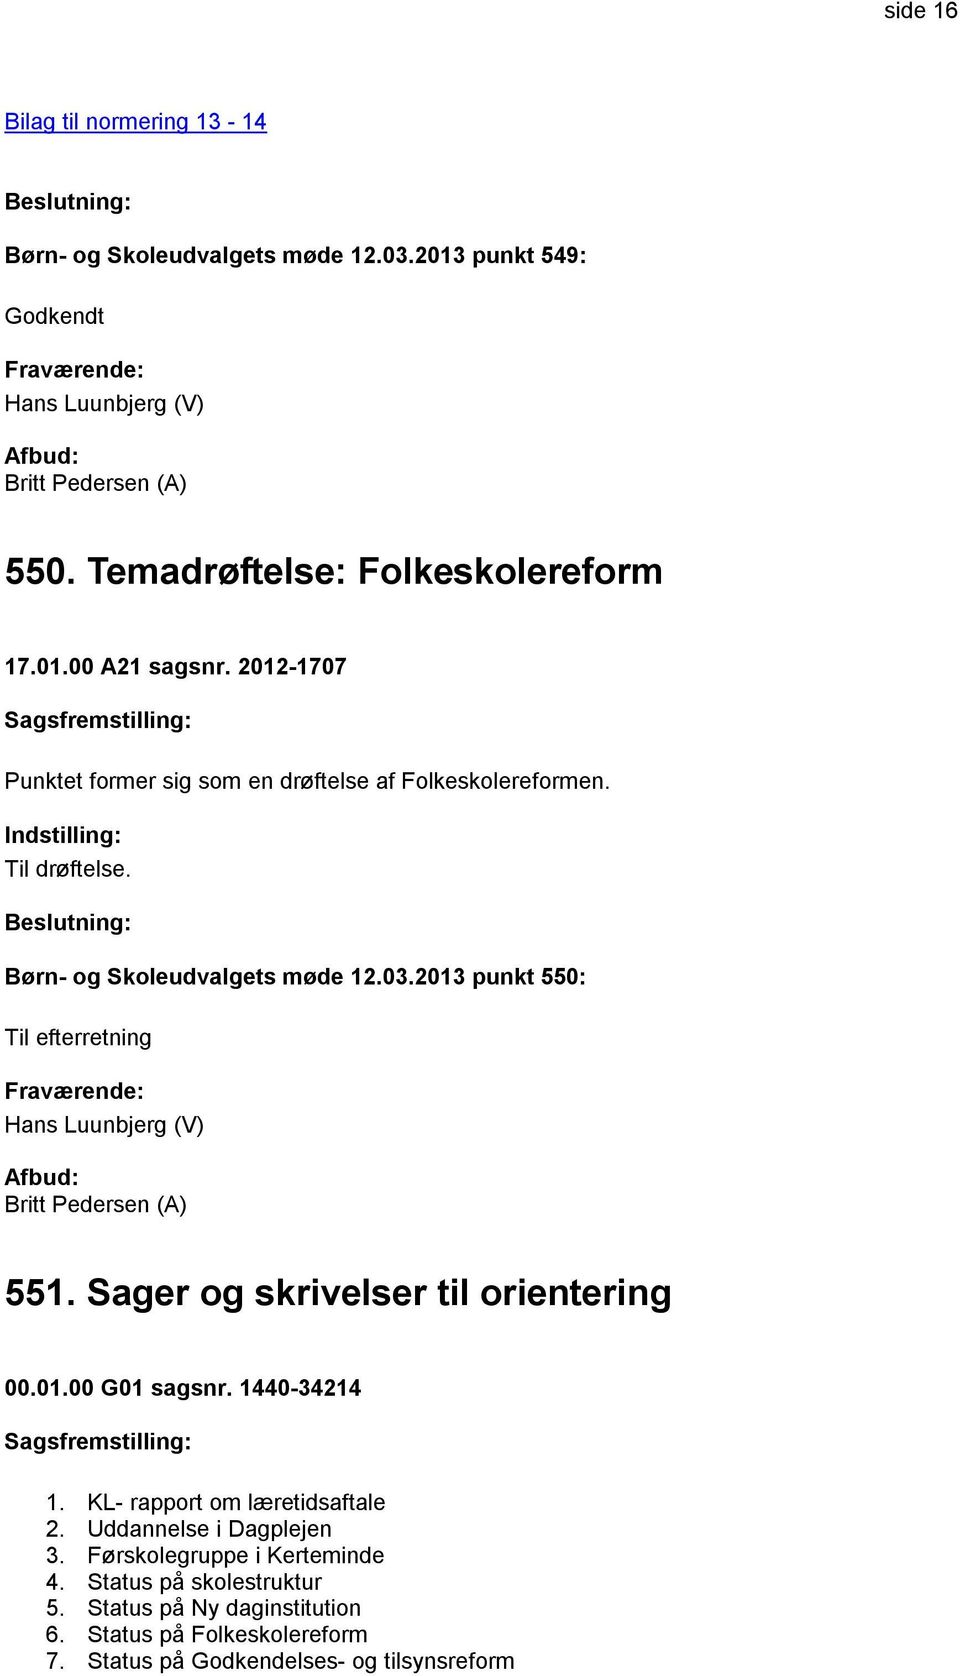 2013 punkt 550: Til efterretning Hans Luunbjerg (V) 551. Sager og skrivelser til orientering 00.01.00 G01 sagsnr. 1440-34214 1.